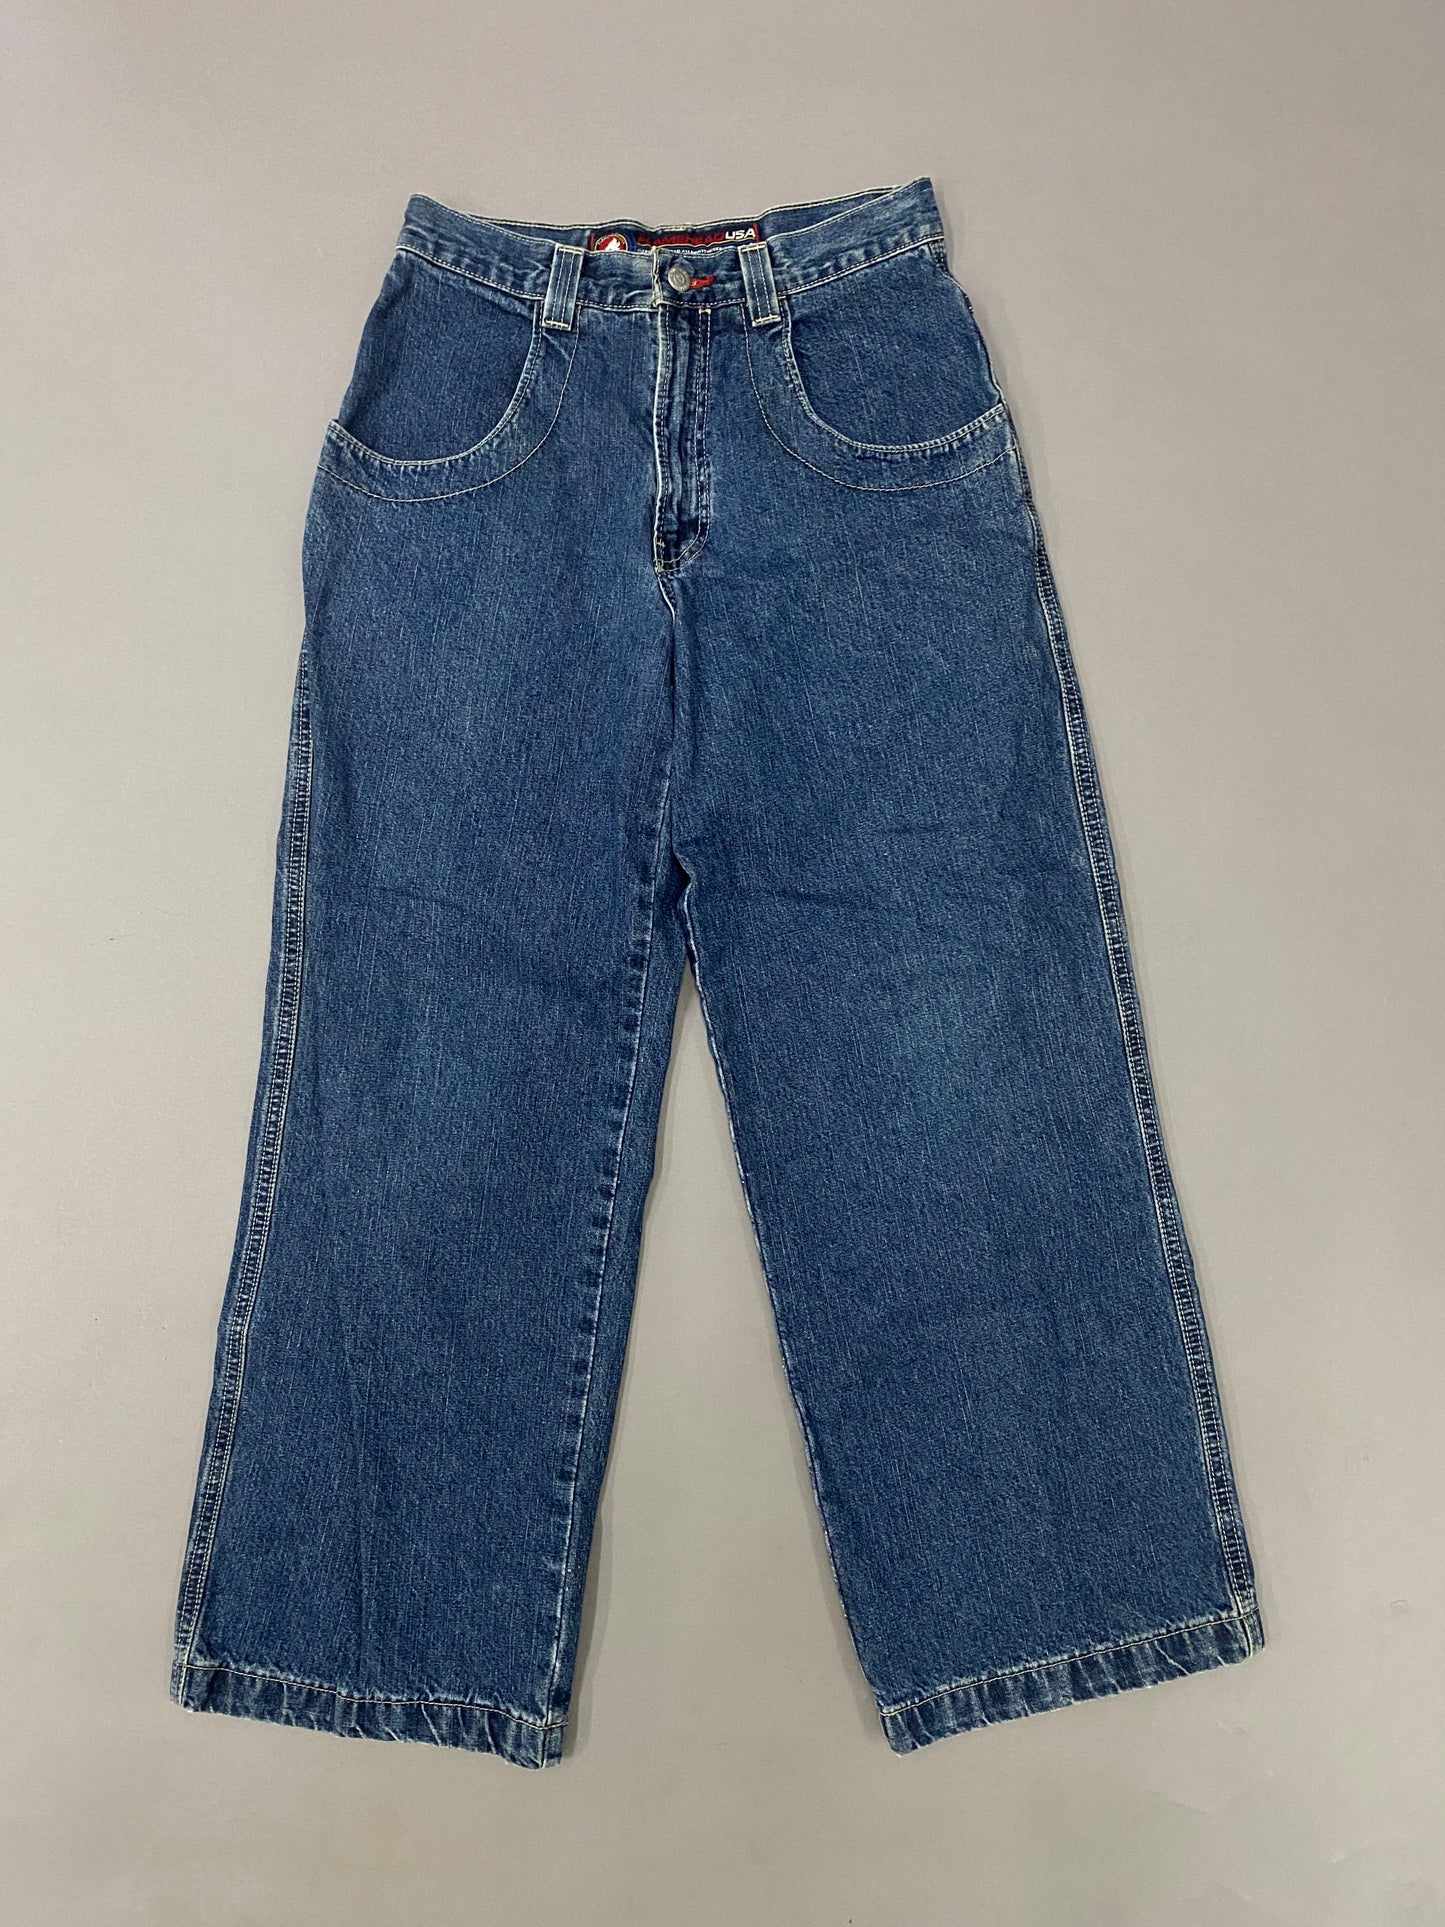 JNCO Flameboy Vintage Jeans - 18